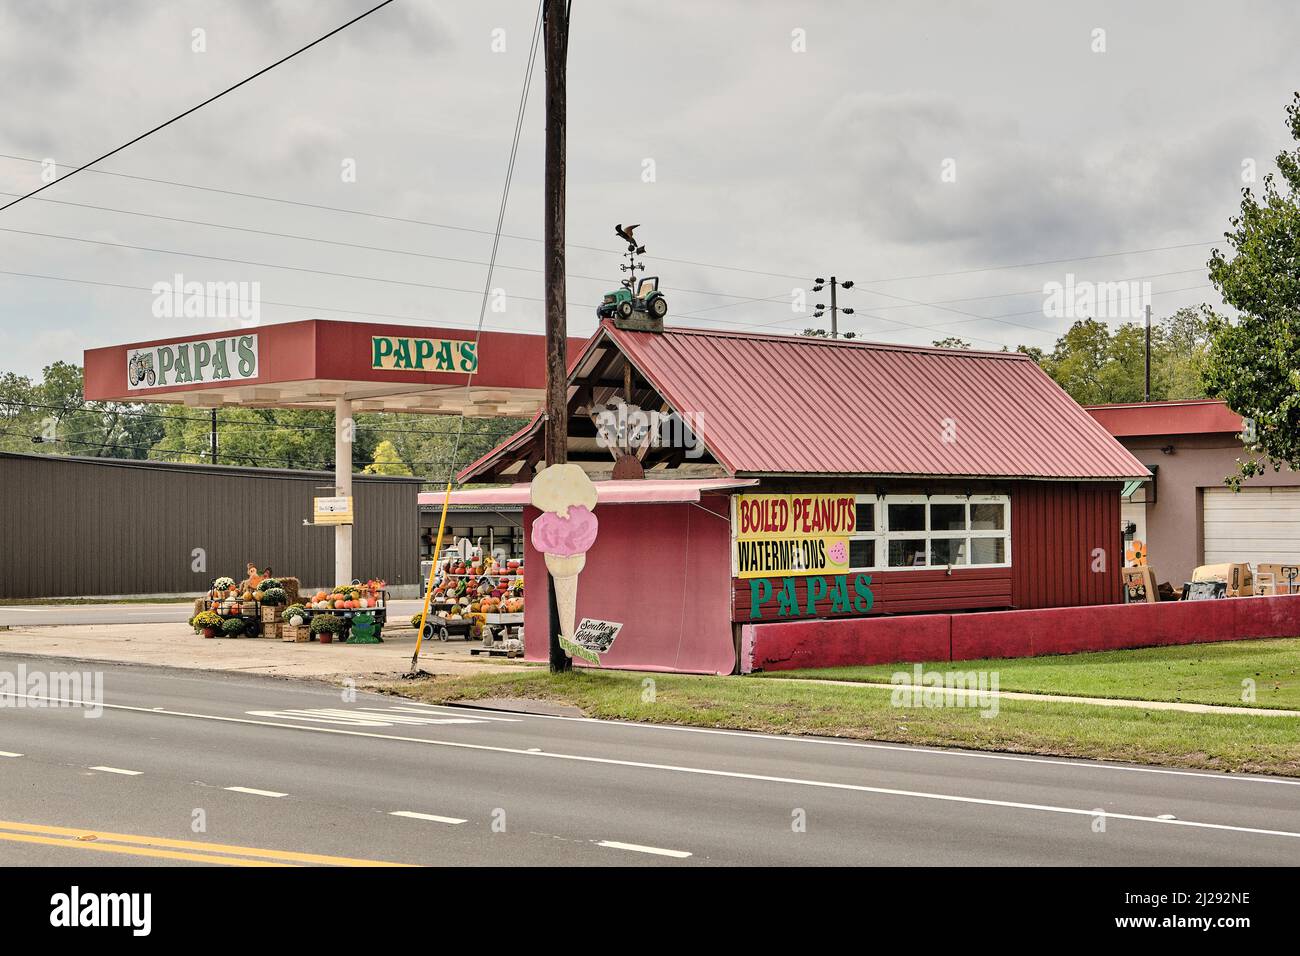 Pappa's Farm Store am Straßenrand, Obststand oder kleines Country Store in Brantley Alabama, ländlichen USA. Stockfoto